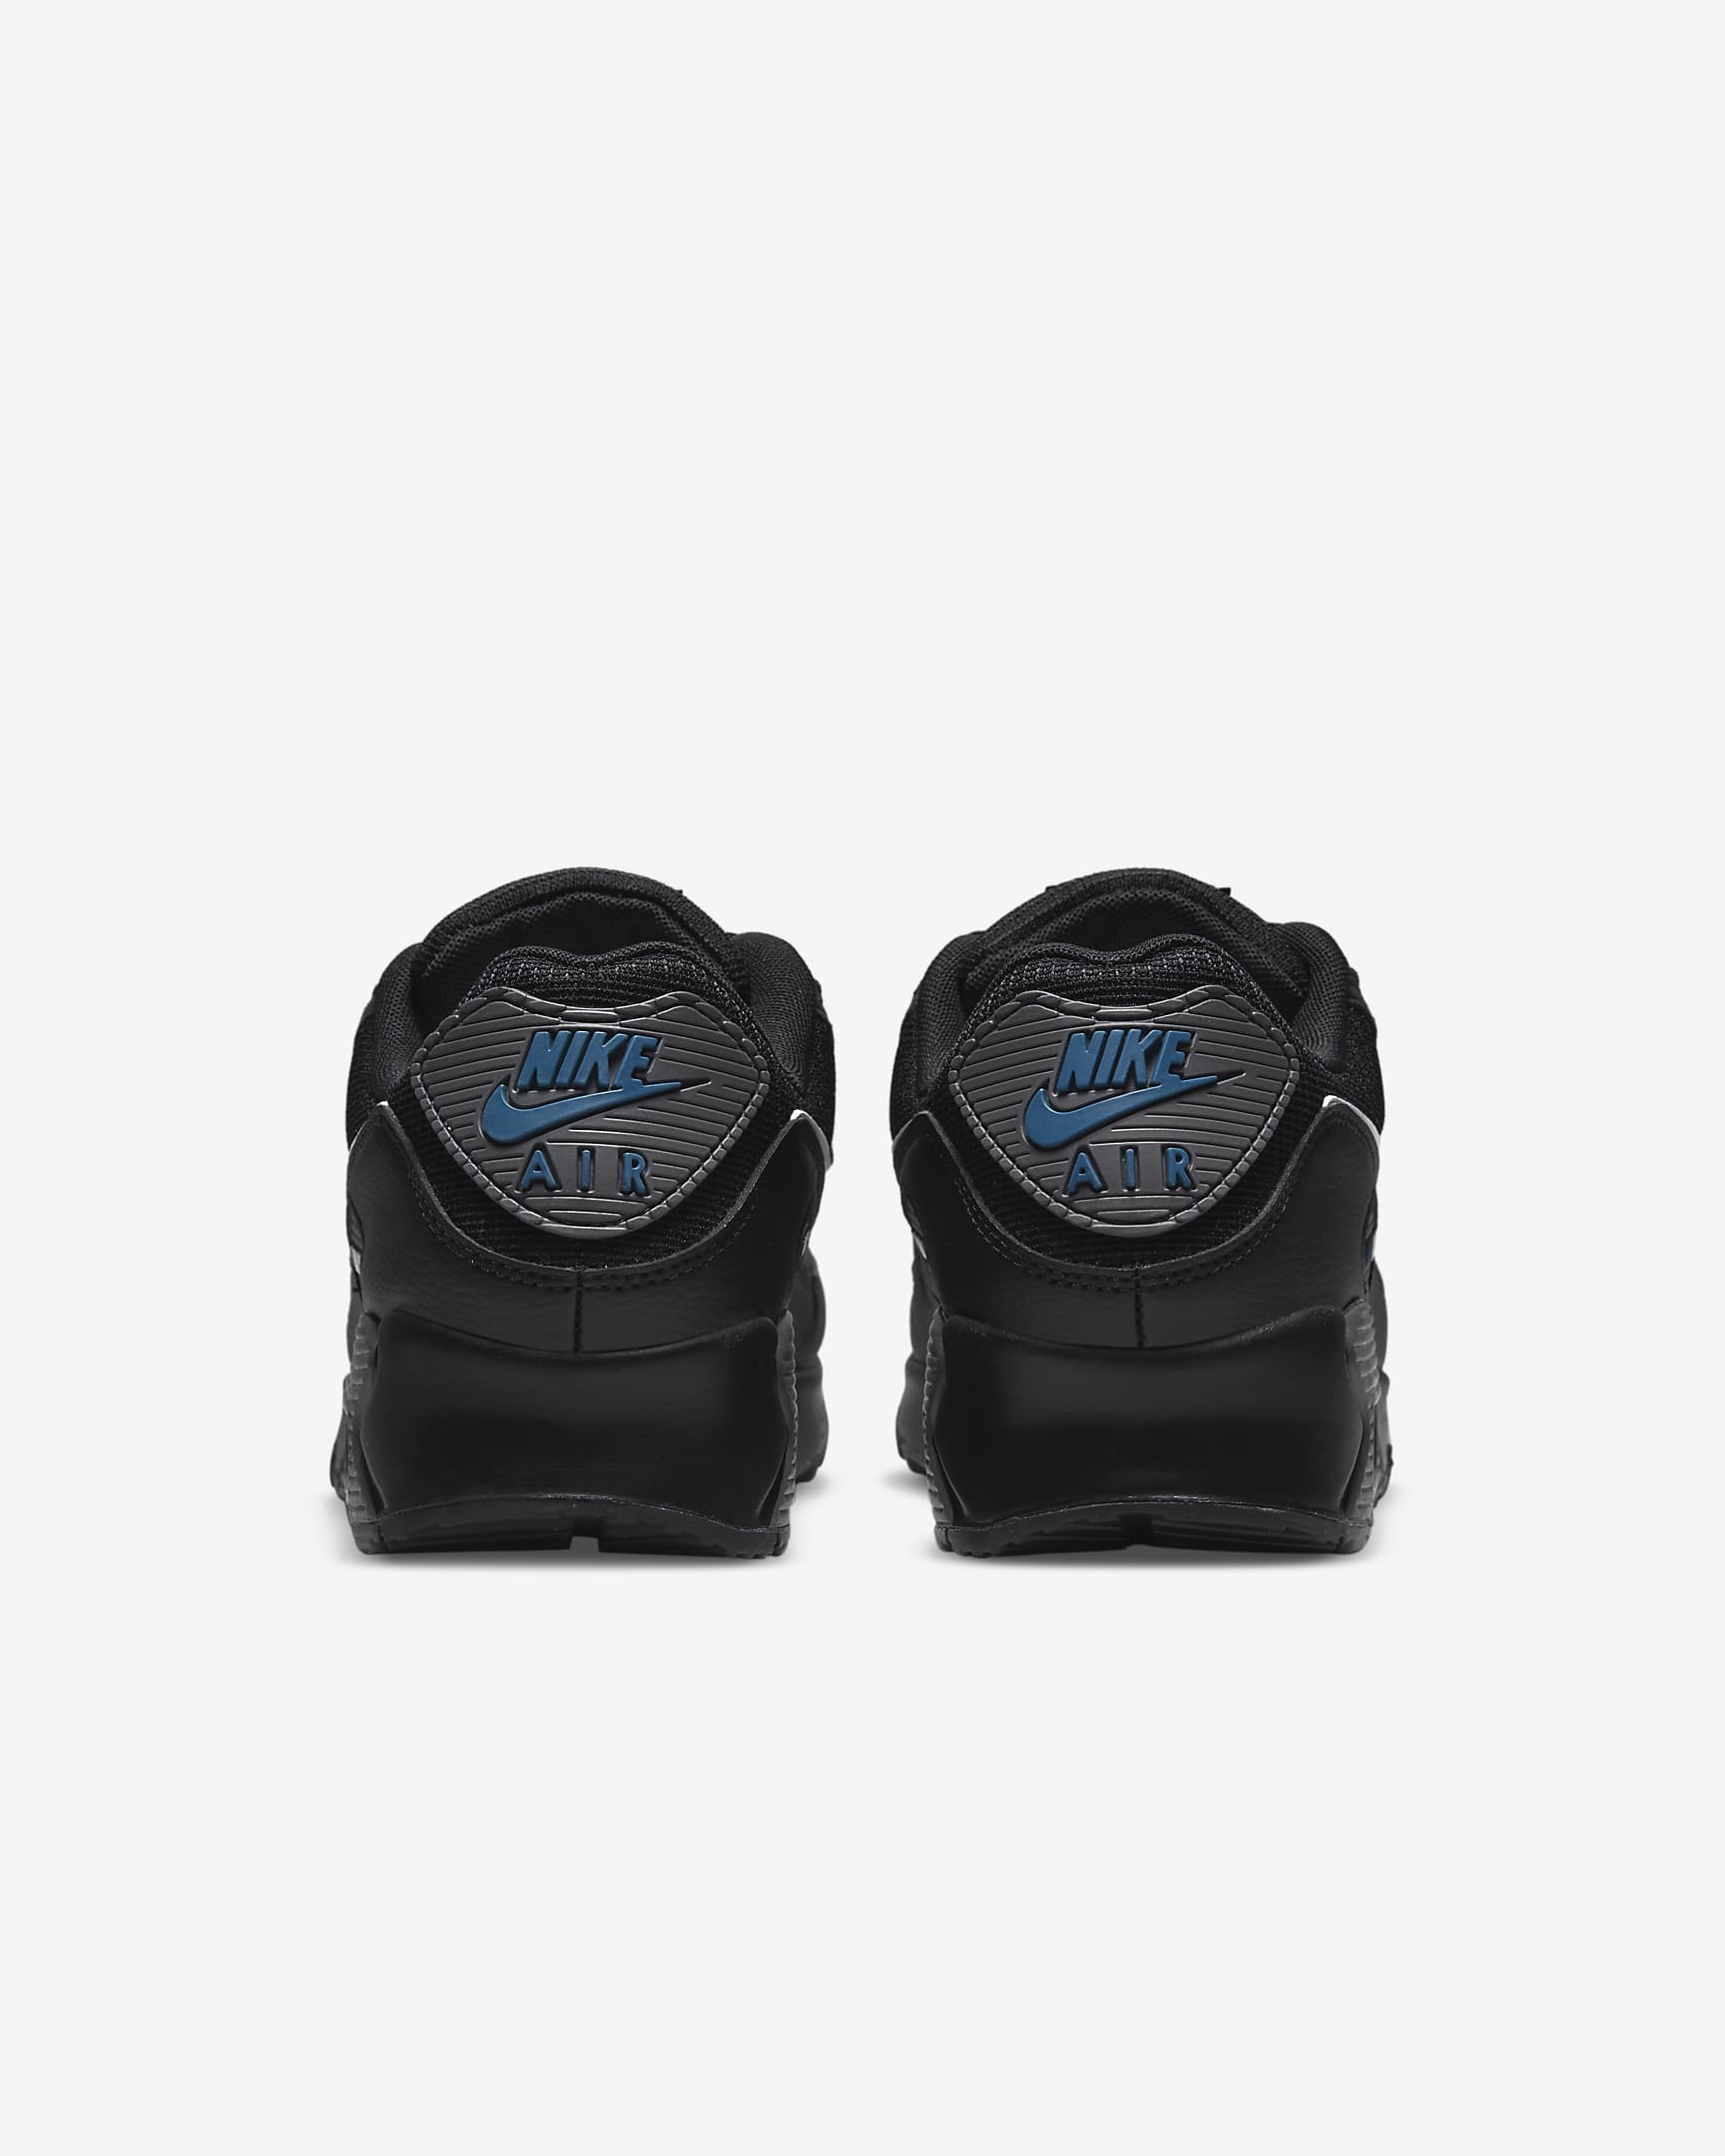 Sapatilhas Nike Air Max 90 para homem - Preto/Marina/Cinzento Iron/Branco